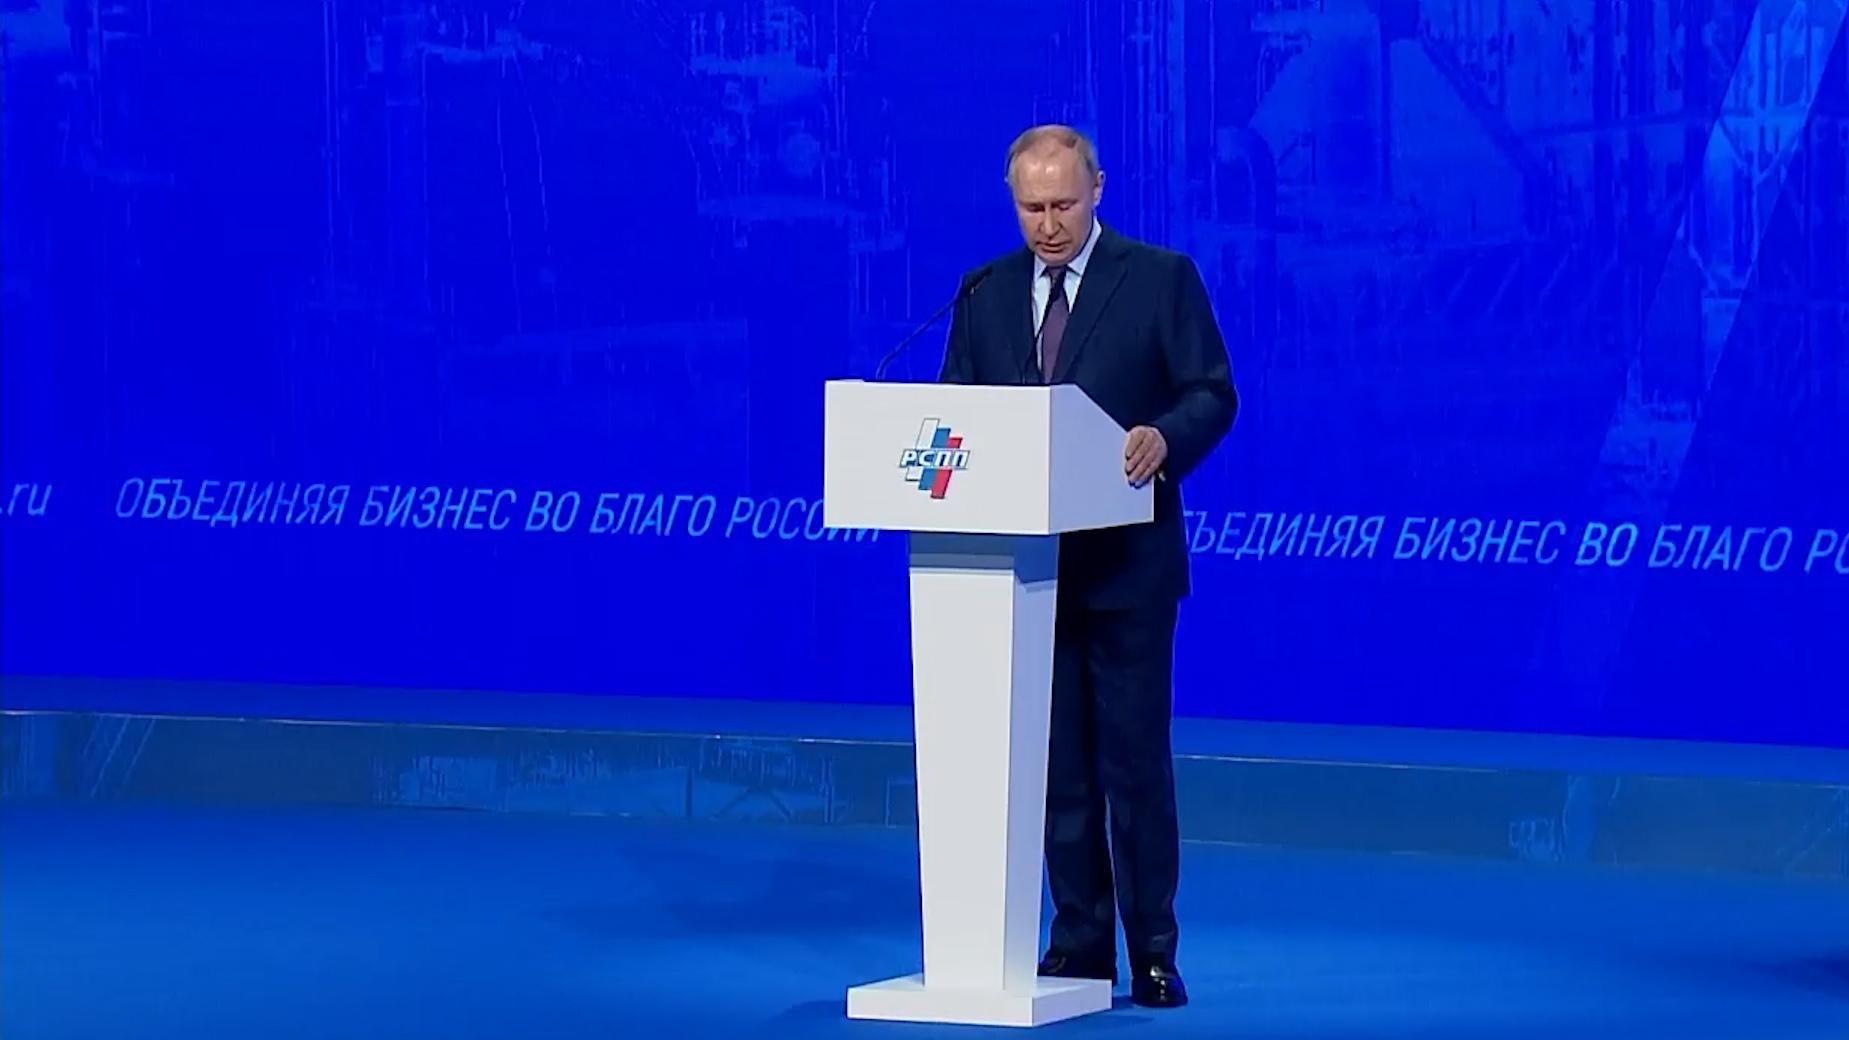 Как прошел съезд РСПП с участием Путина. Главное